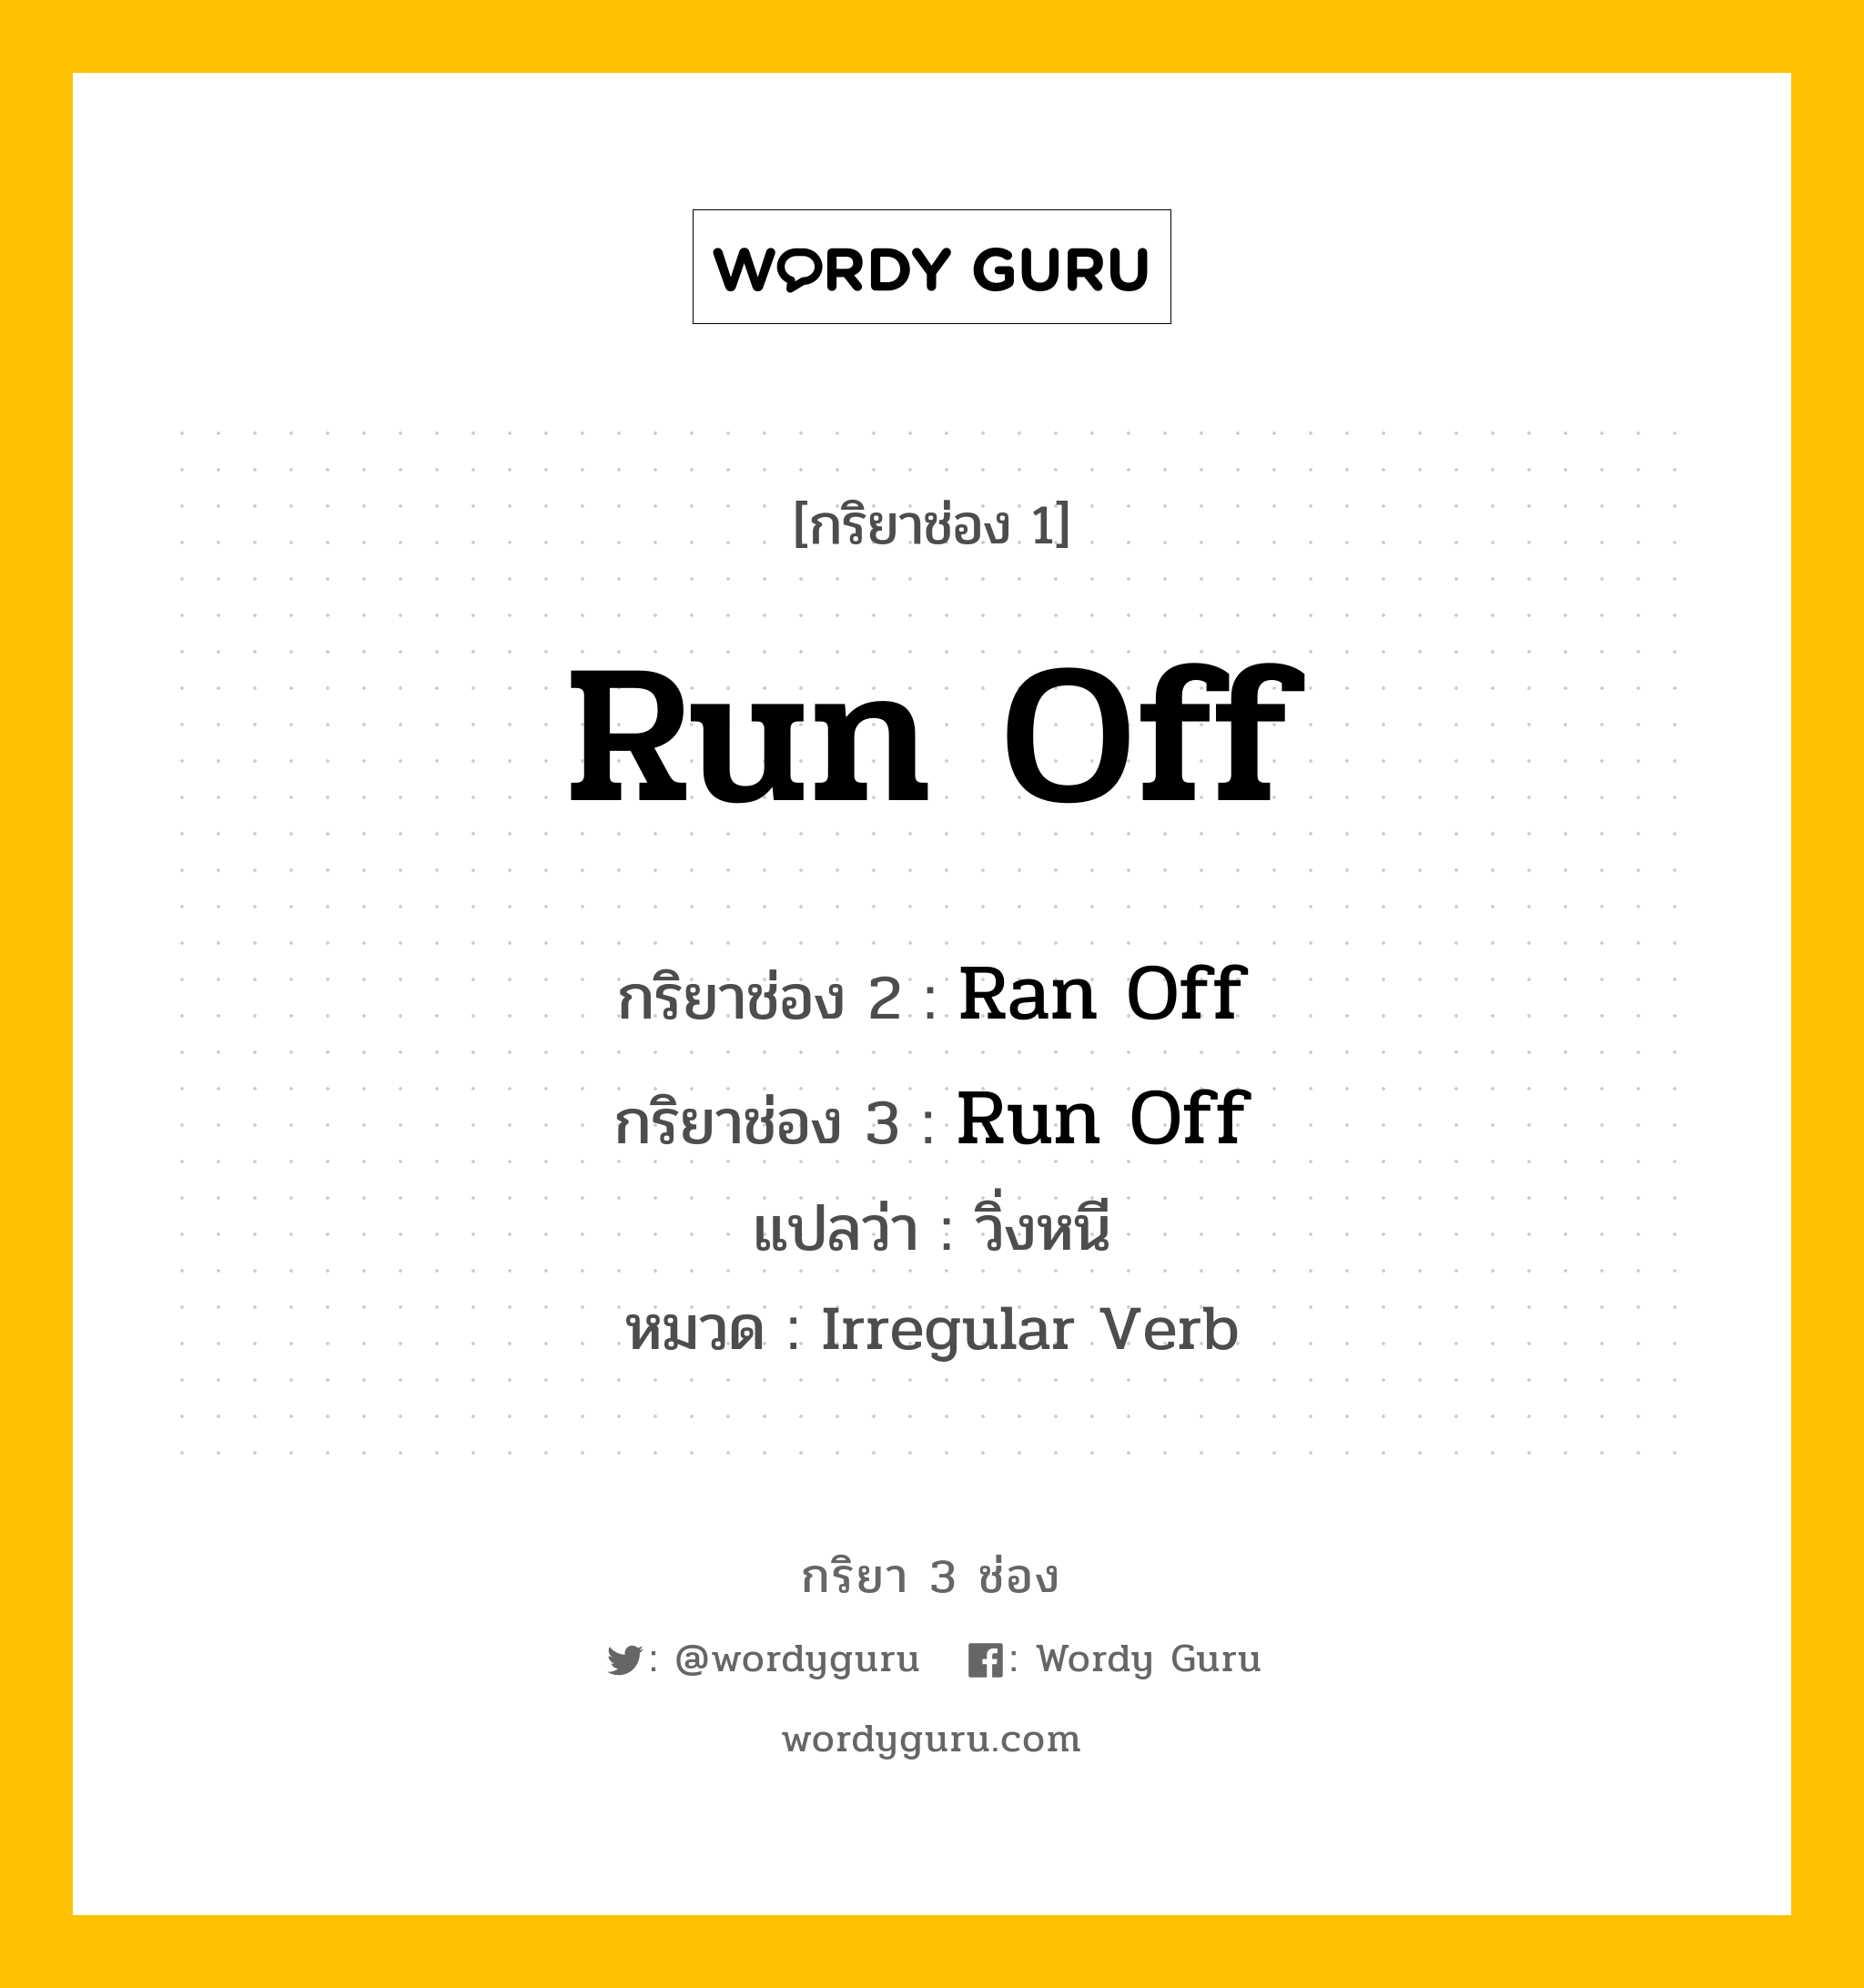 กริยา 3 ช่อง: Run Off ช่อง 2 Run Off ช่อง 3 คืออะไร, กริยาช่อง 1 Run Off กริยาช่อง 2 Ran Off กริยาช่อง 3 Run Off แปลว่า วิ่งหนี หมวด Irregular Verb หมวด Irregular Verb